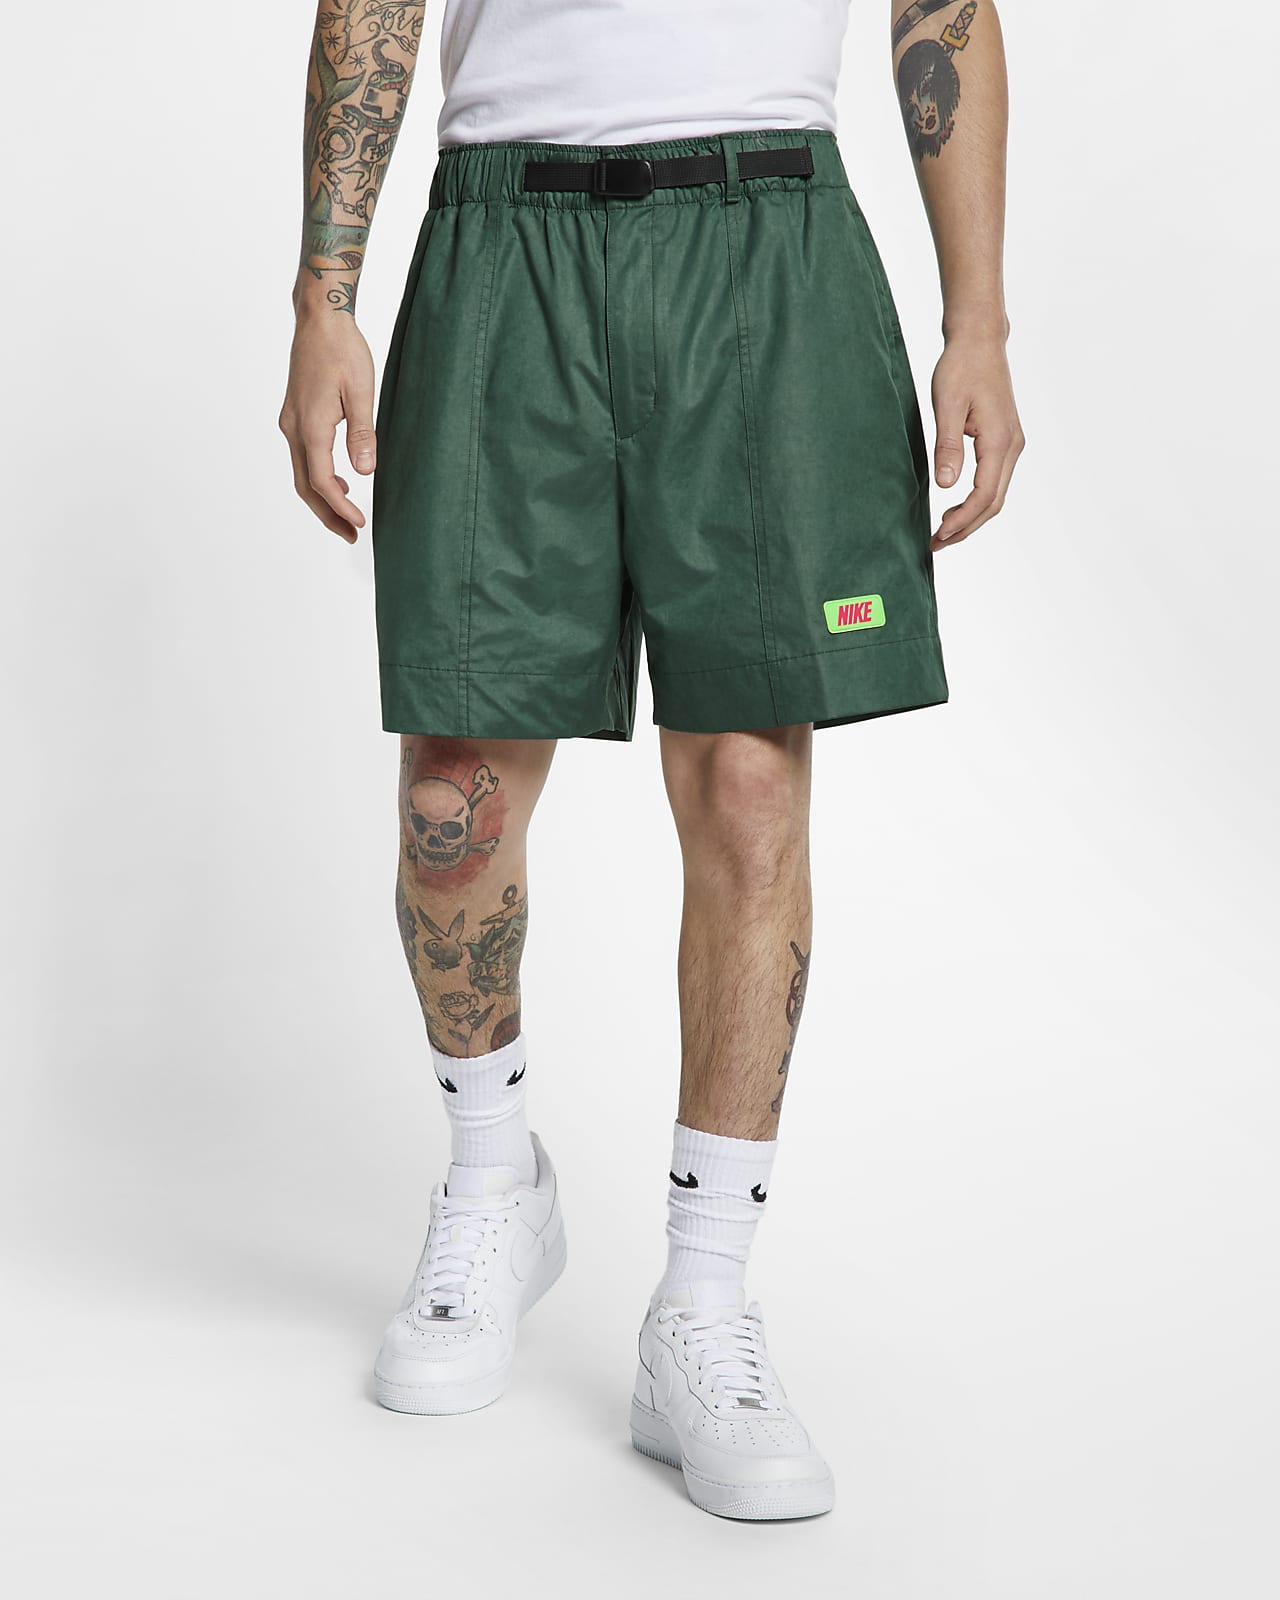 nike oversized swoosh pocket green shorts